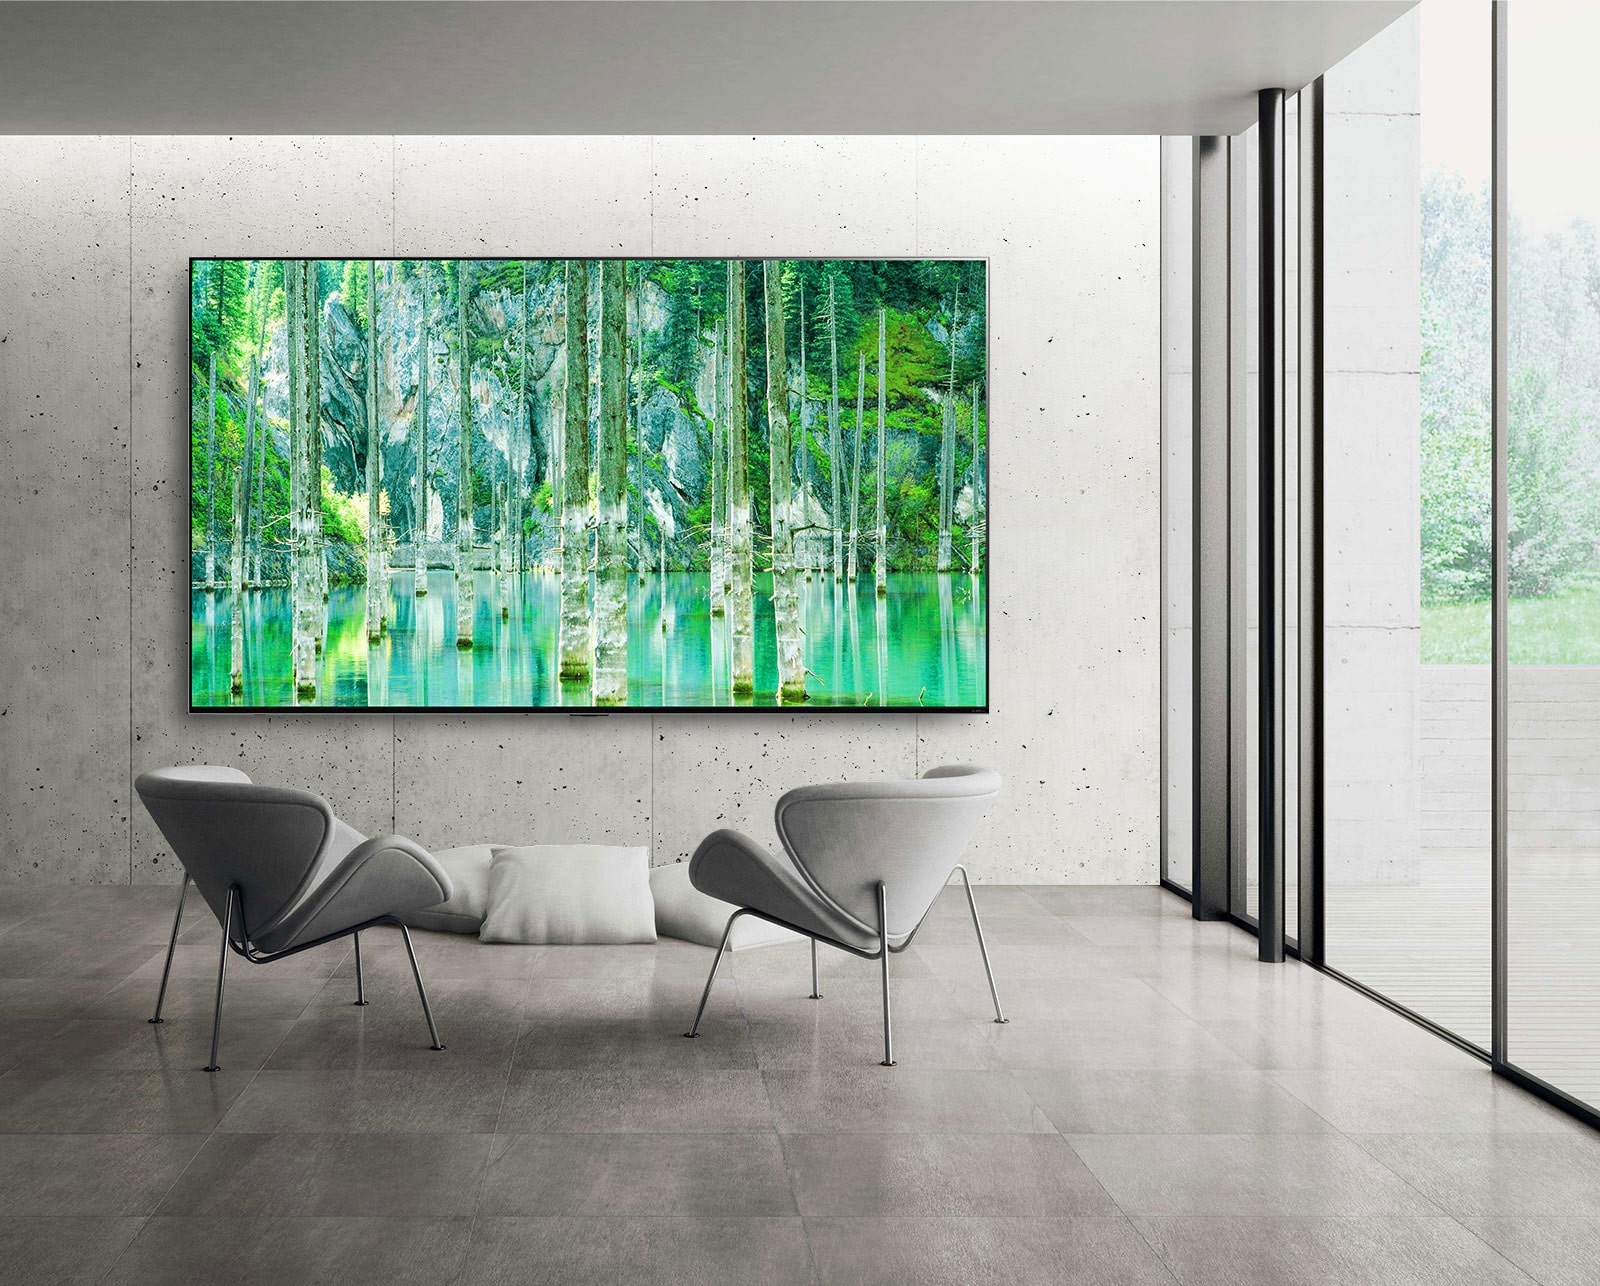 صورة توضح شاشة تلفزيون QNED MiniLED كبيرة الحجم من إل جي مثبتة على جدار رمادي من الخرسانة المجردة. شاشة تعرض مشهدًا طبيعيًا أخضر اللون مع وجود كرسيين أمام التلفزيون.